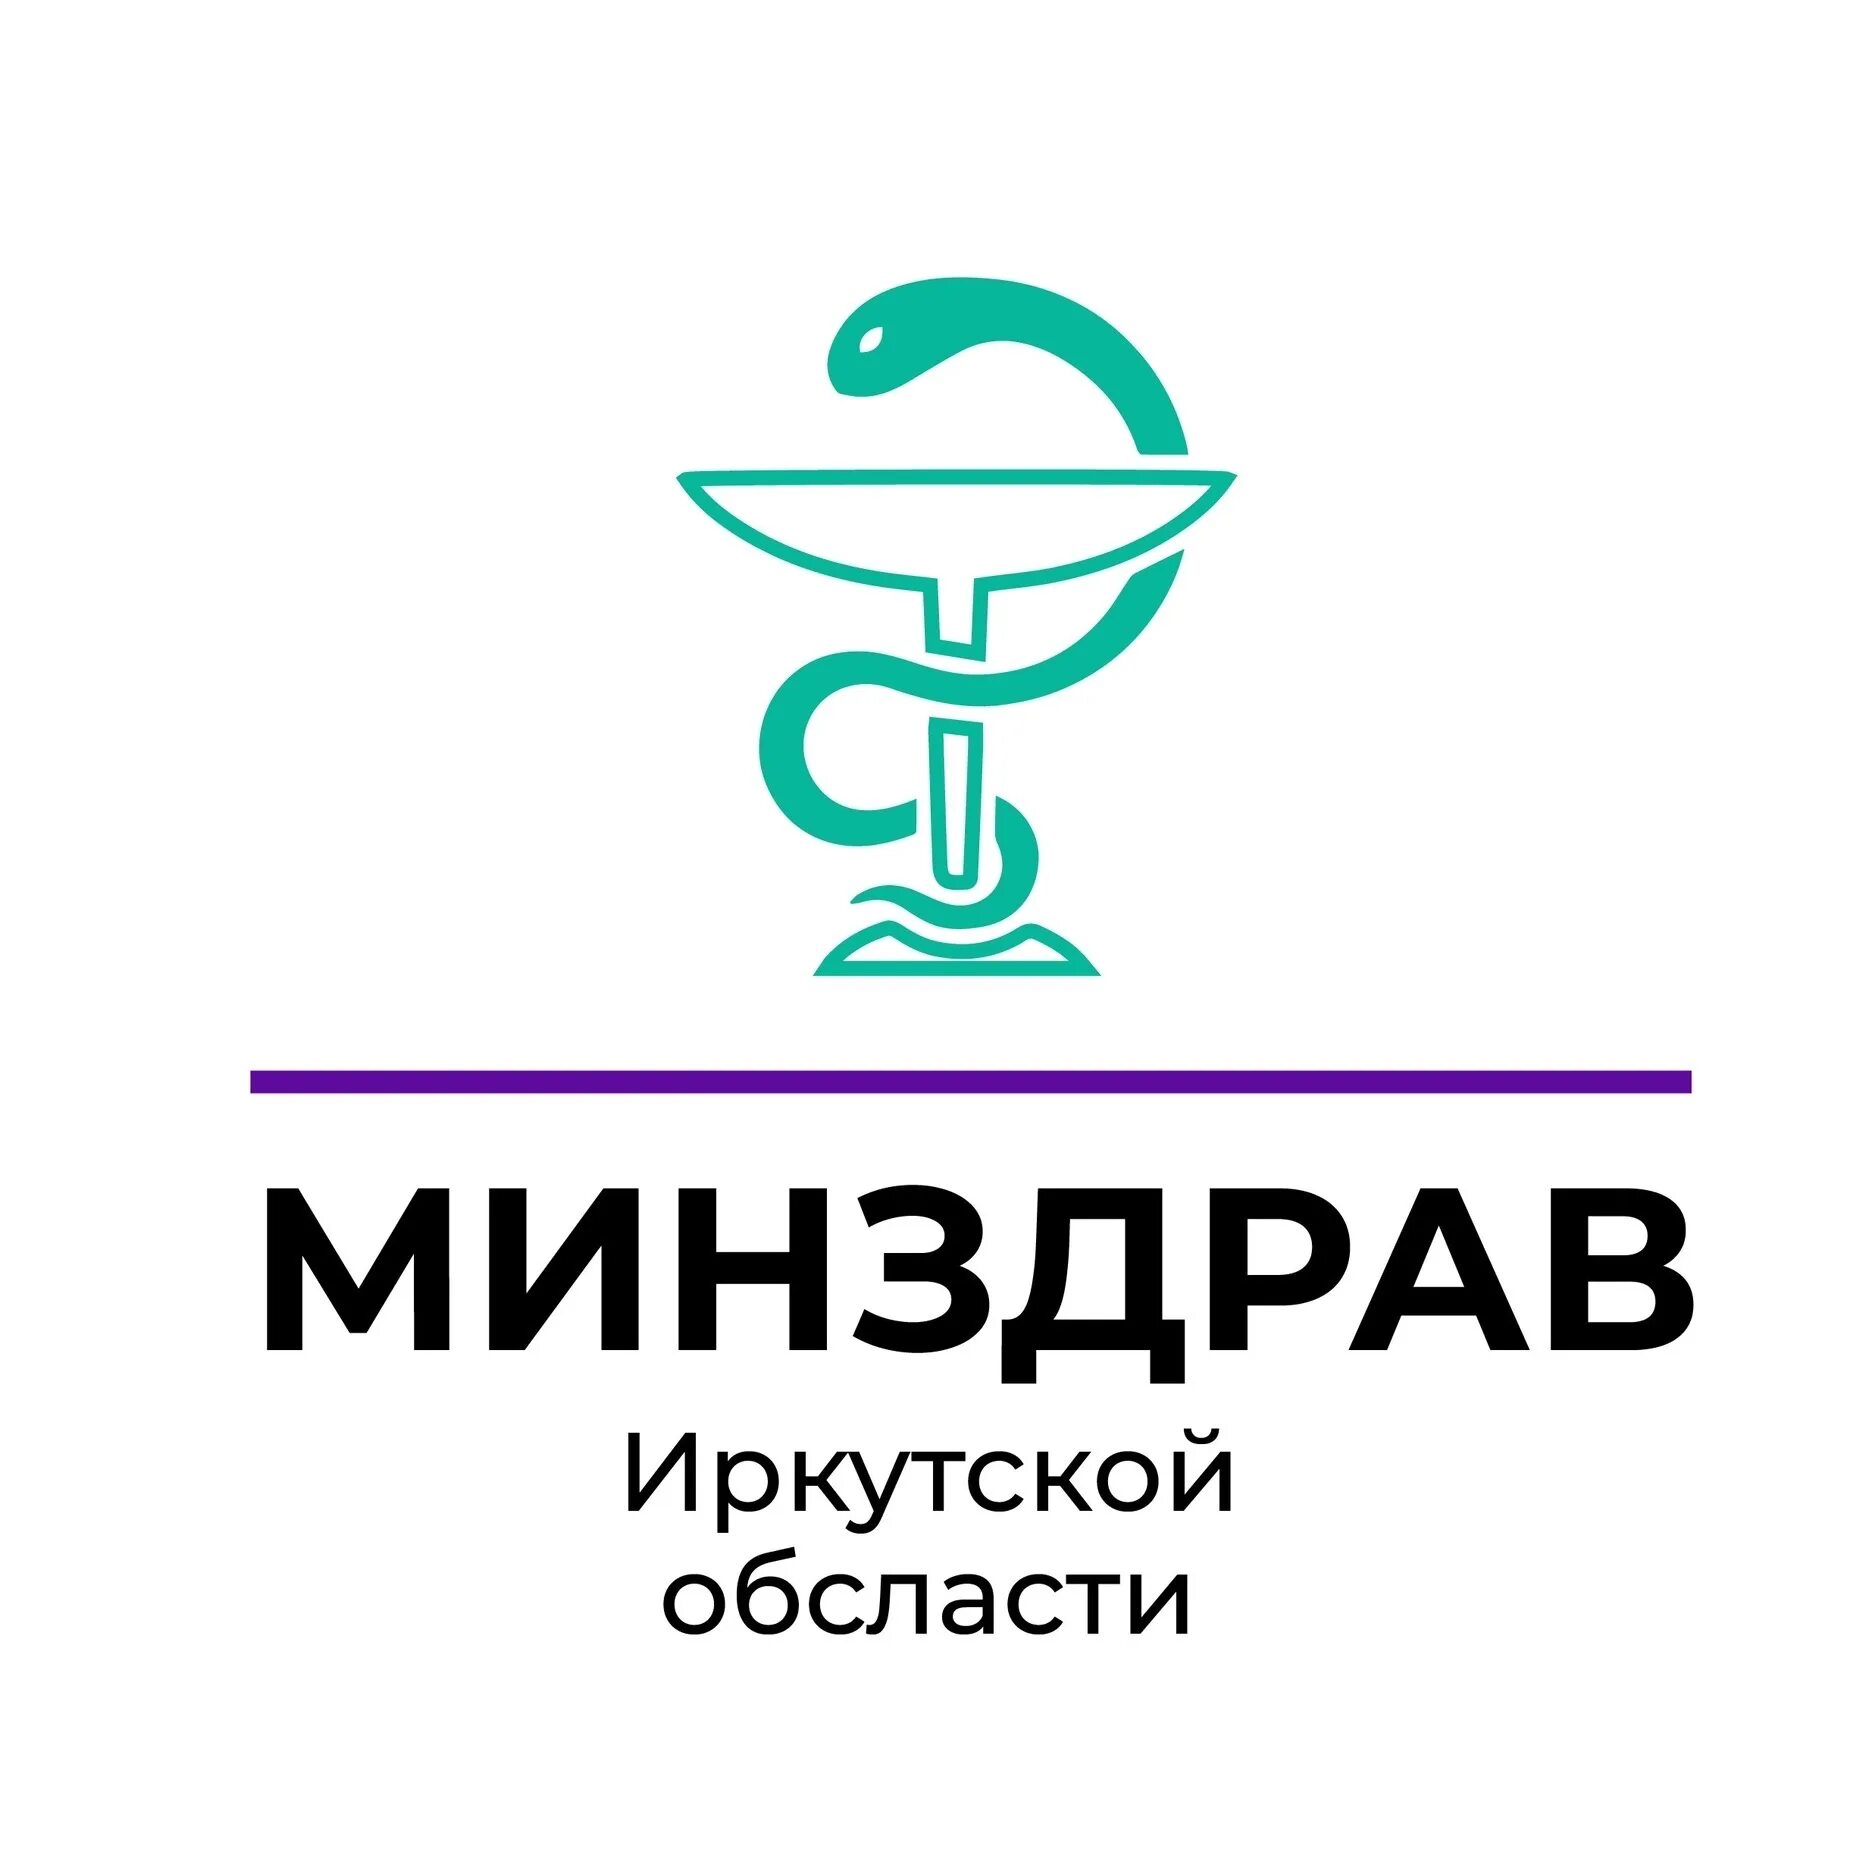 Телефон здравоохранения иркутской области горячая. Министерство здравоохранения Иркутск. Минздрав Иркутской области лого.